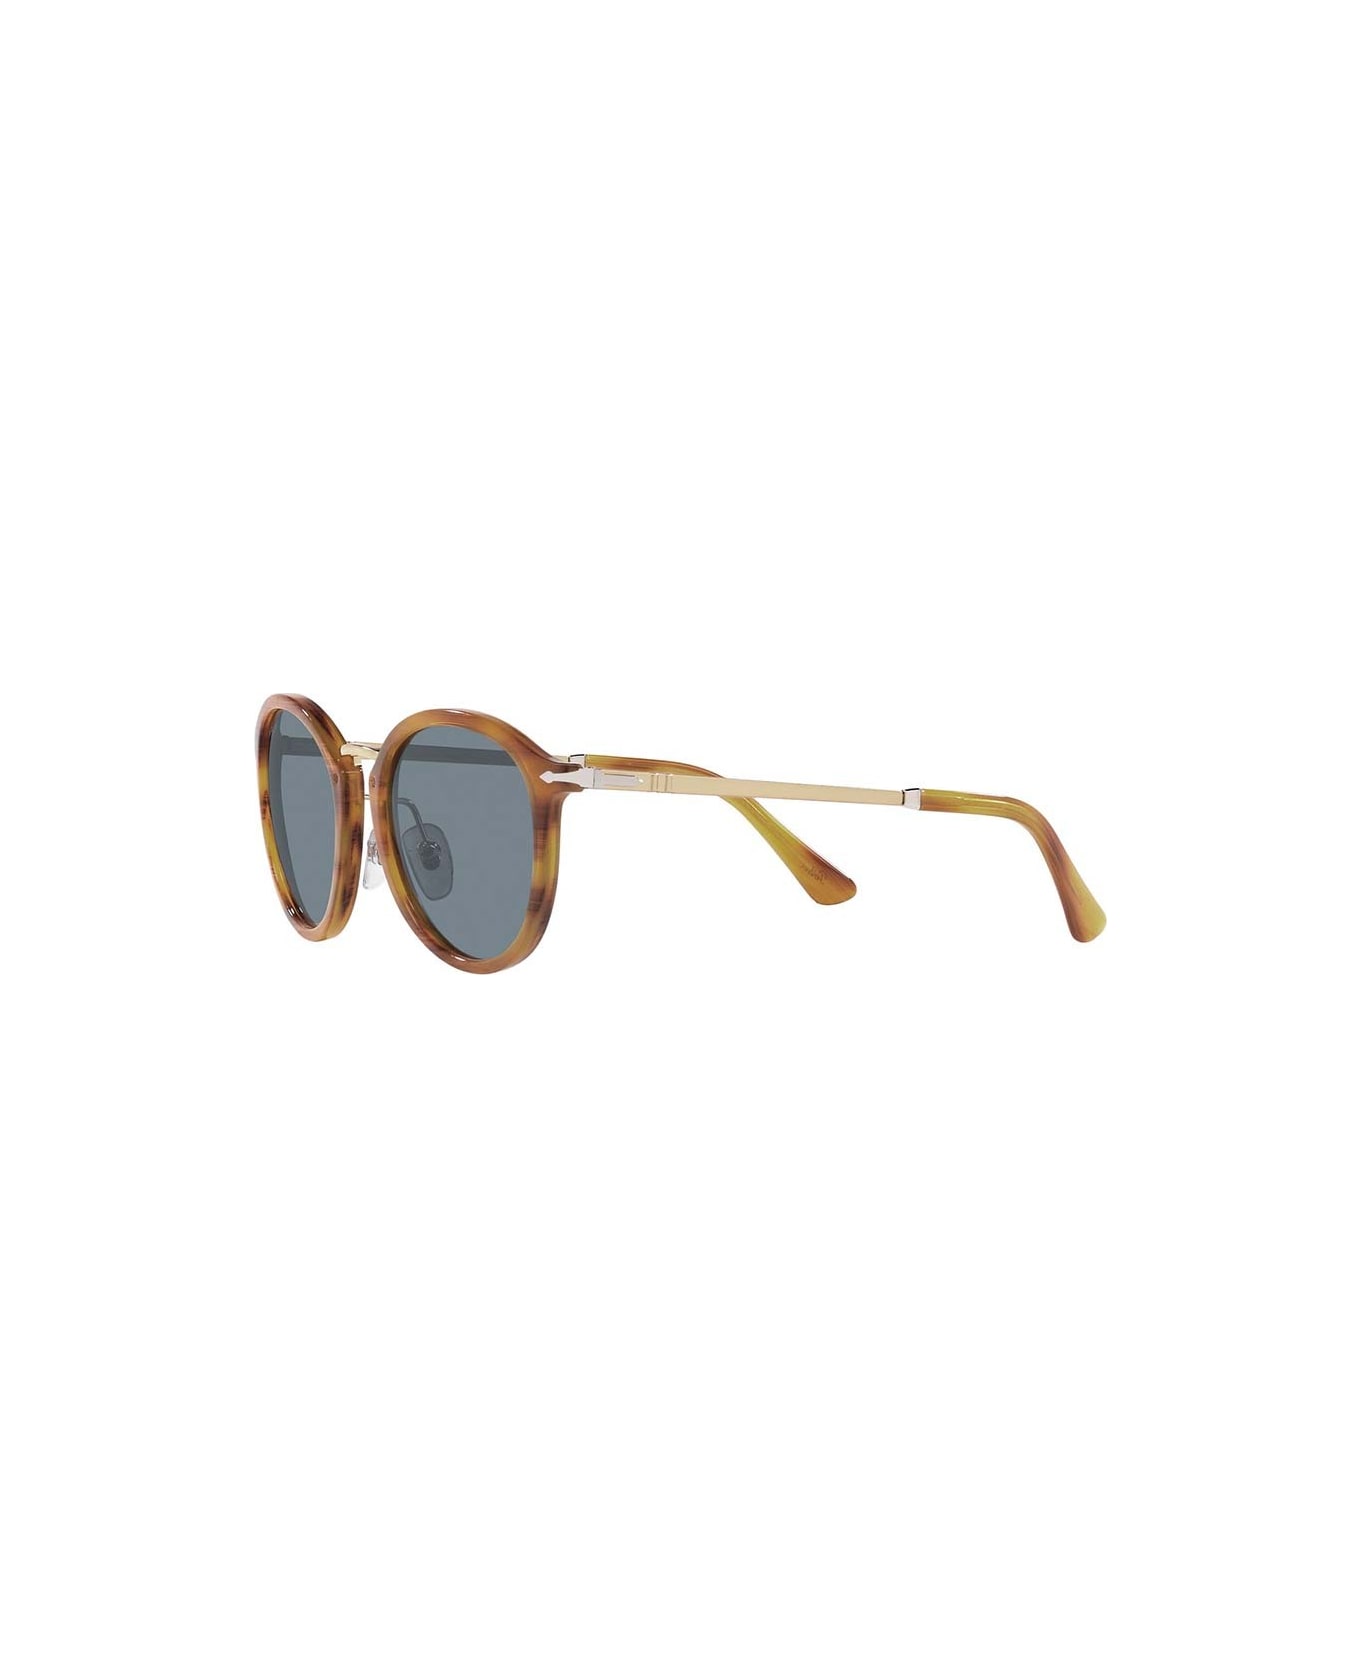 Persol Sunglasses - Marrone/Blu